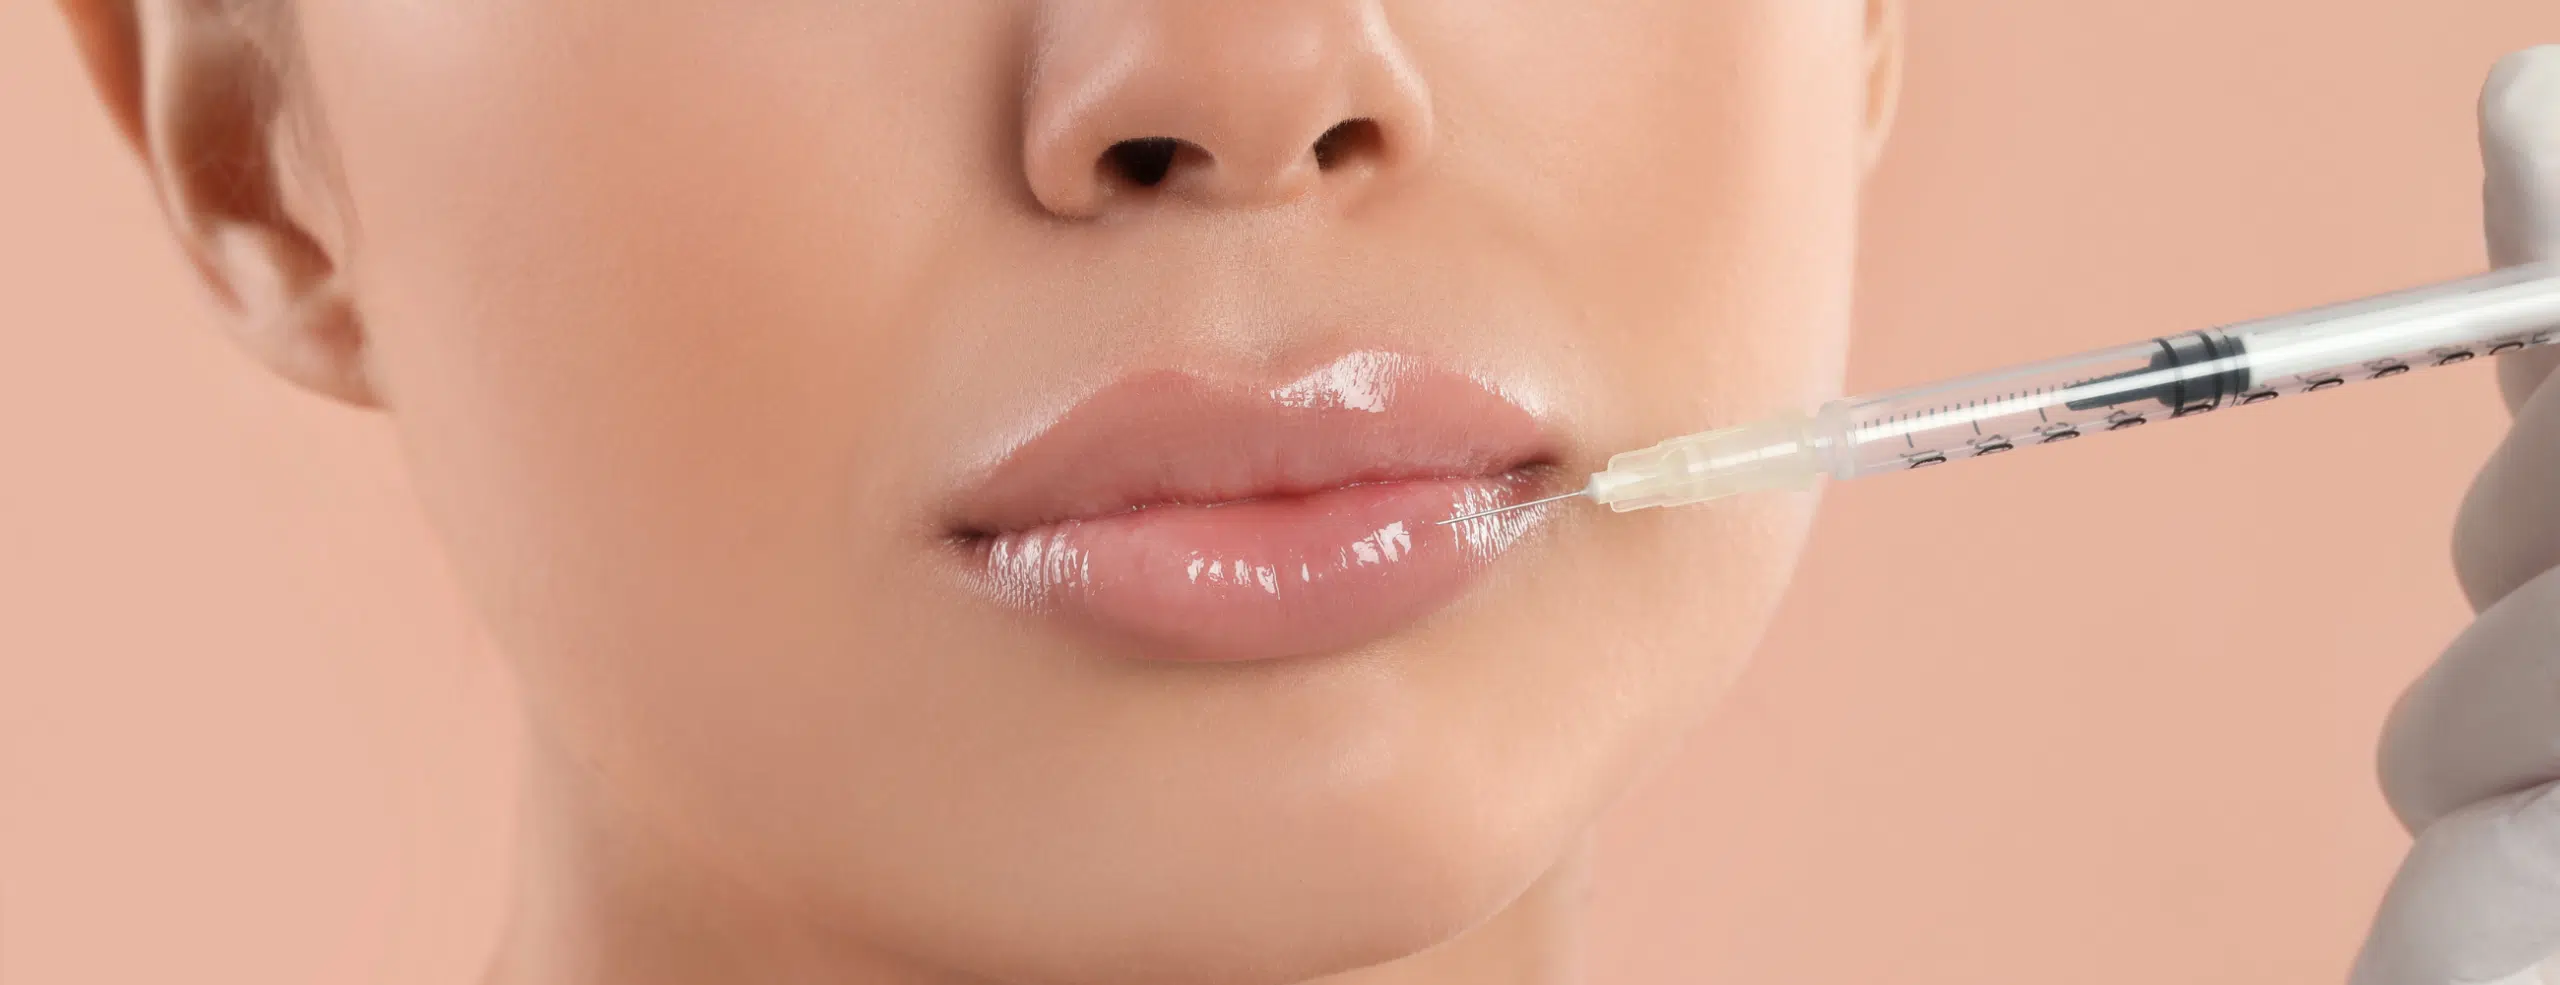 Lèvres trop fines : des traitements efficaces